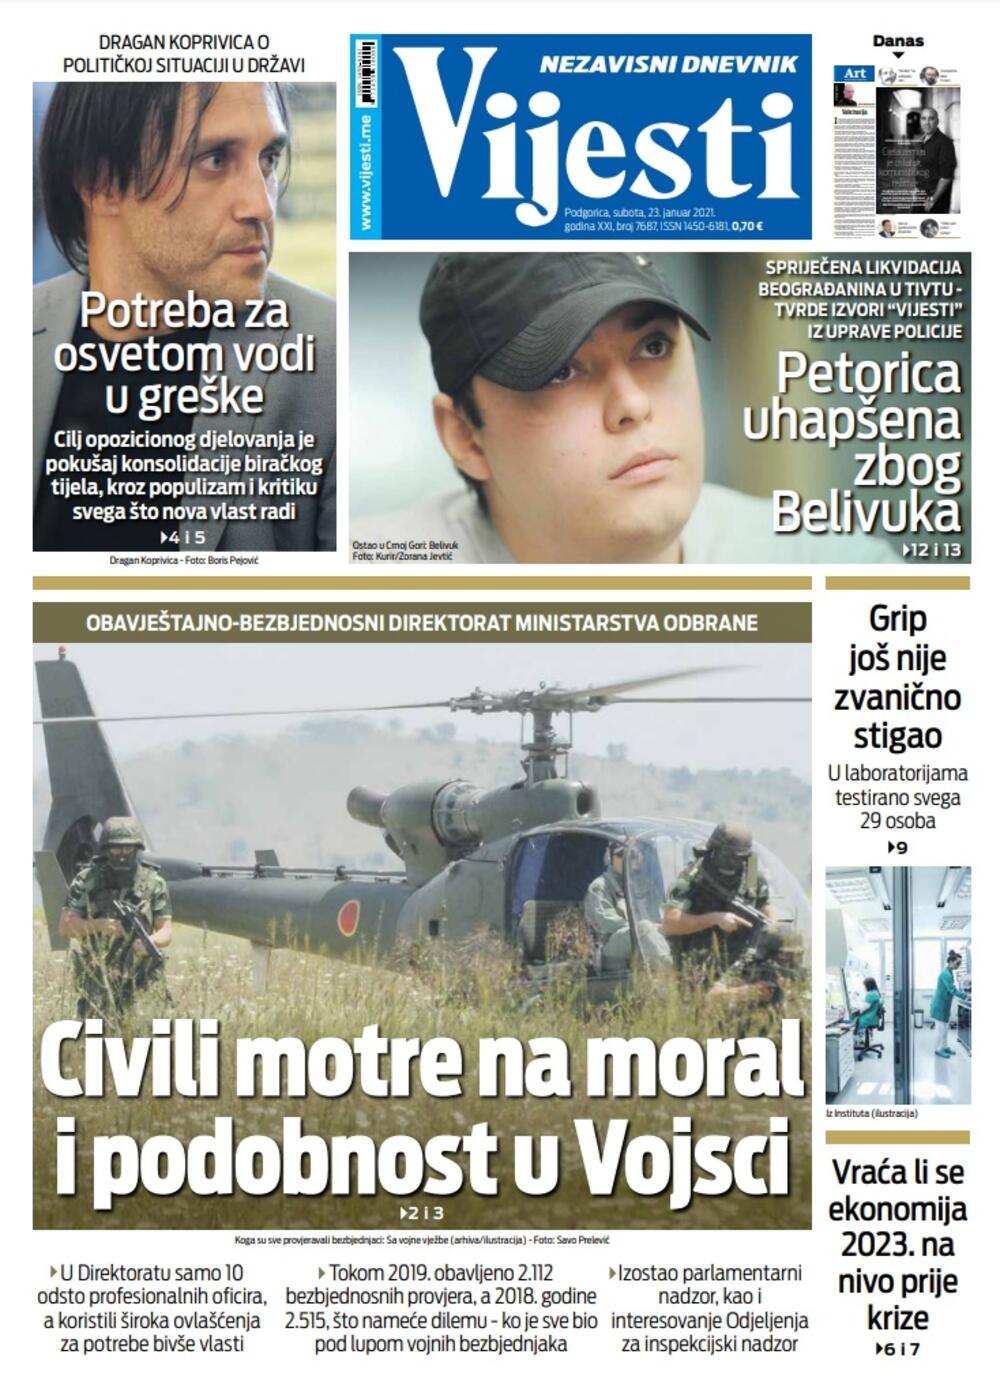 Naslovna strana "Vijesti" za 23. januar 2021., Foto: Vijesti